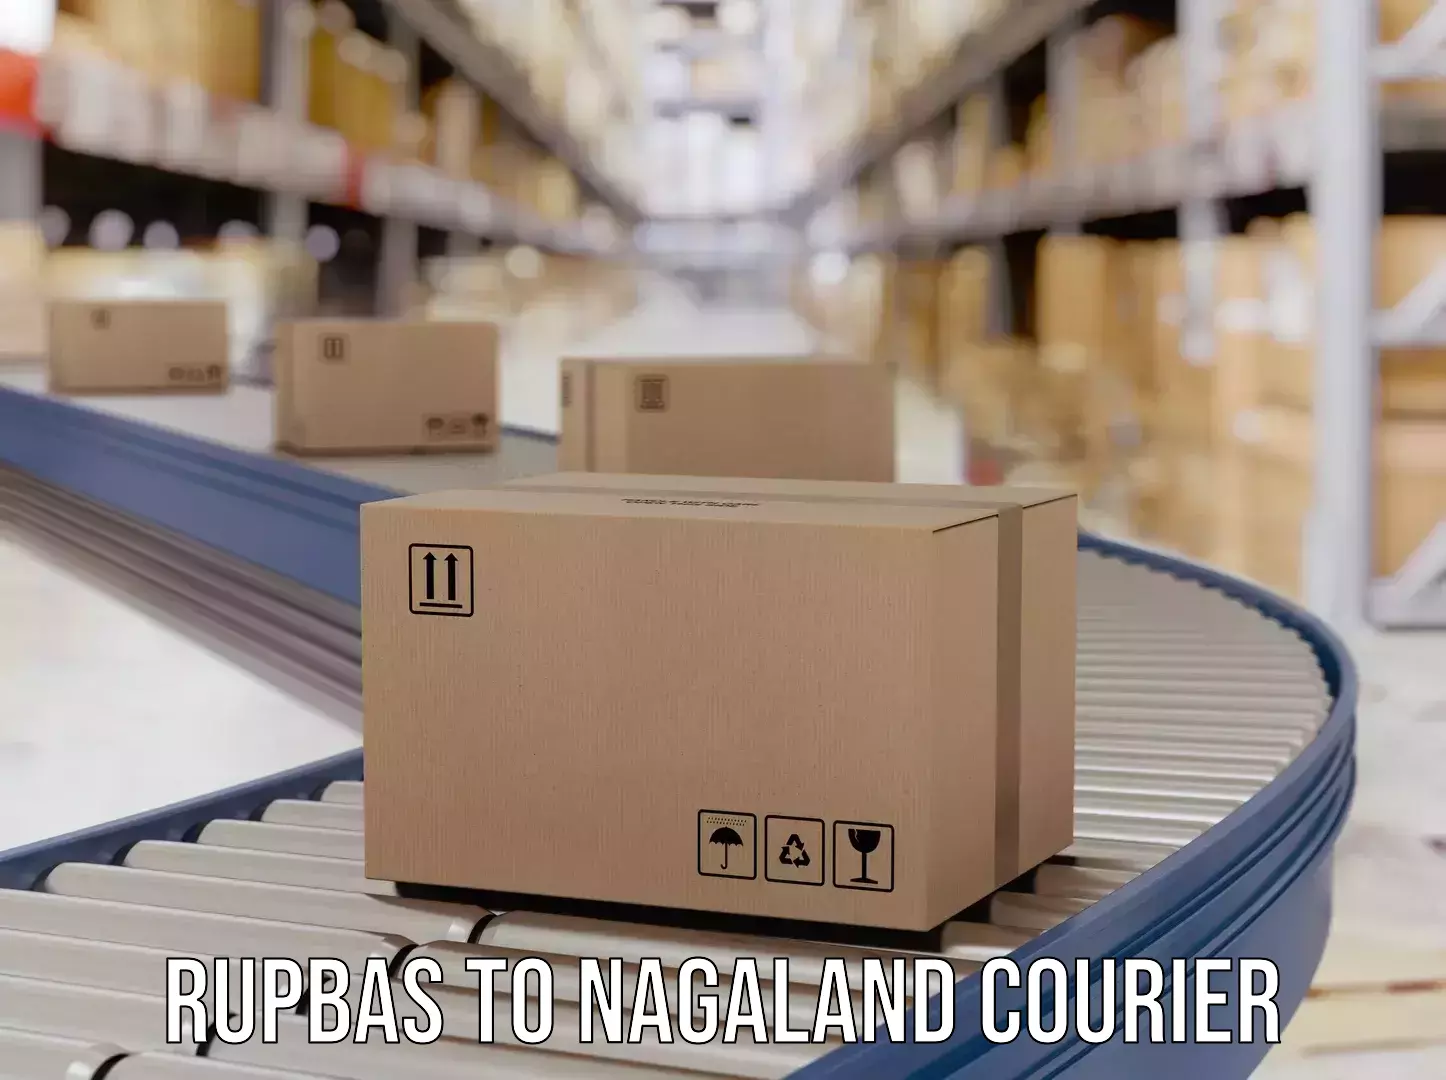 Cargo courier service Rupbas to Nagaland